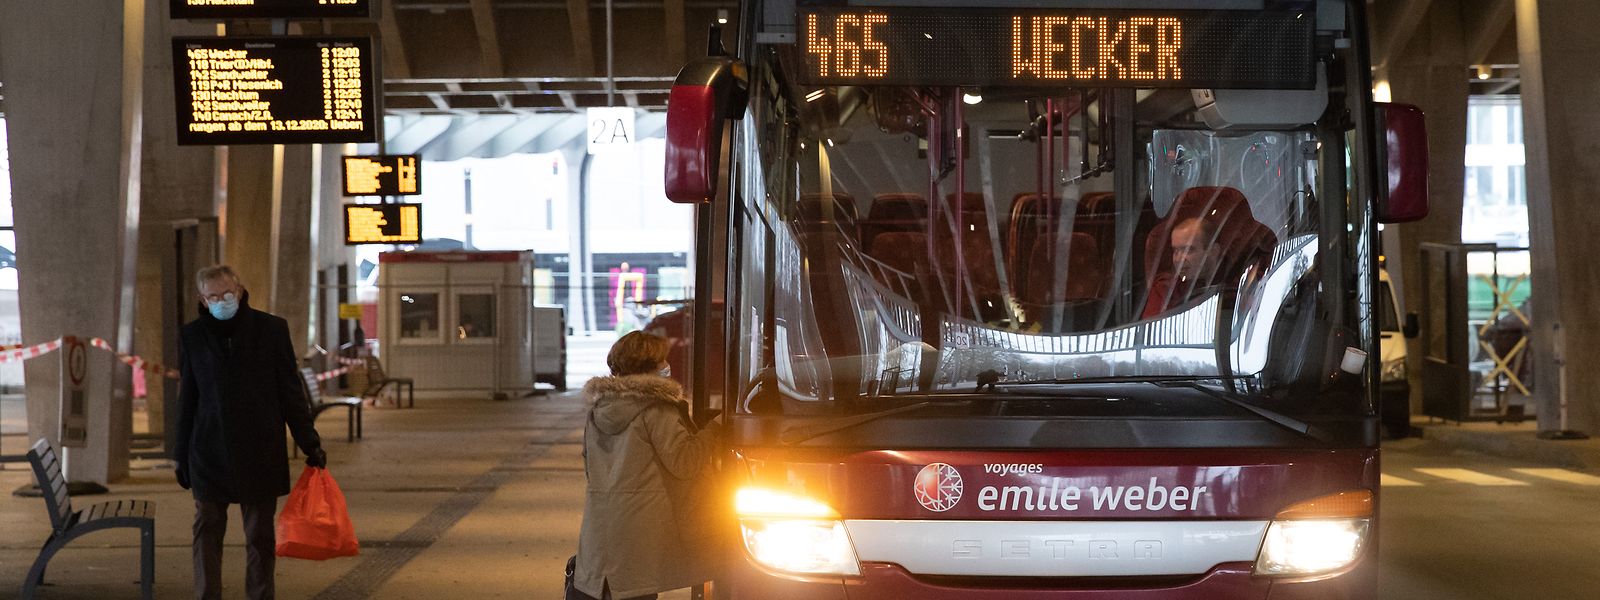 Le phénomène de harcèlement sexuel dans les transports publics au Luxembourg serait en baisse depuis ces cinq dernières années.